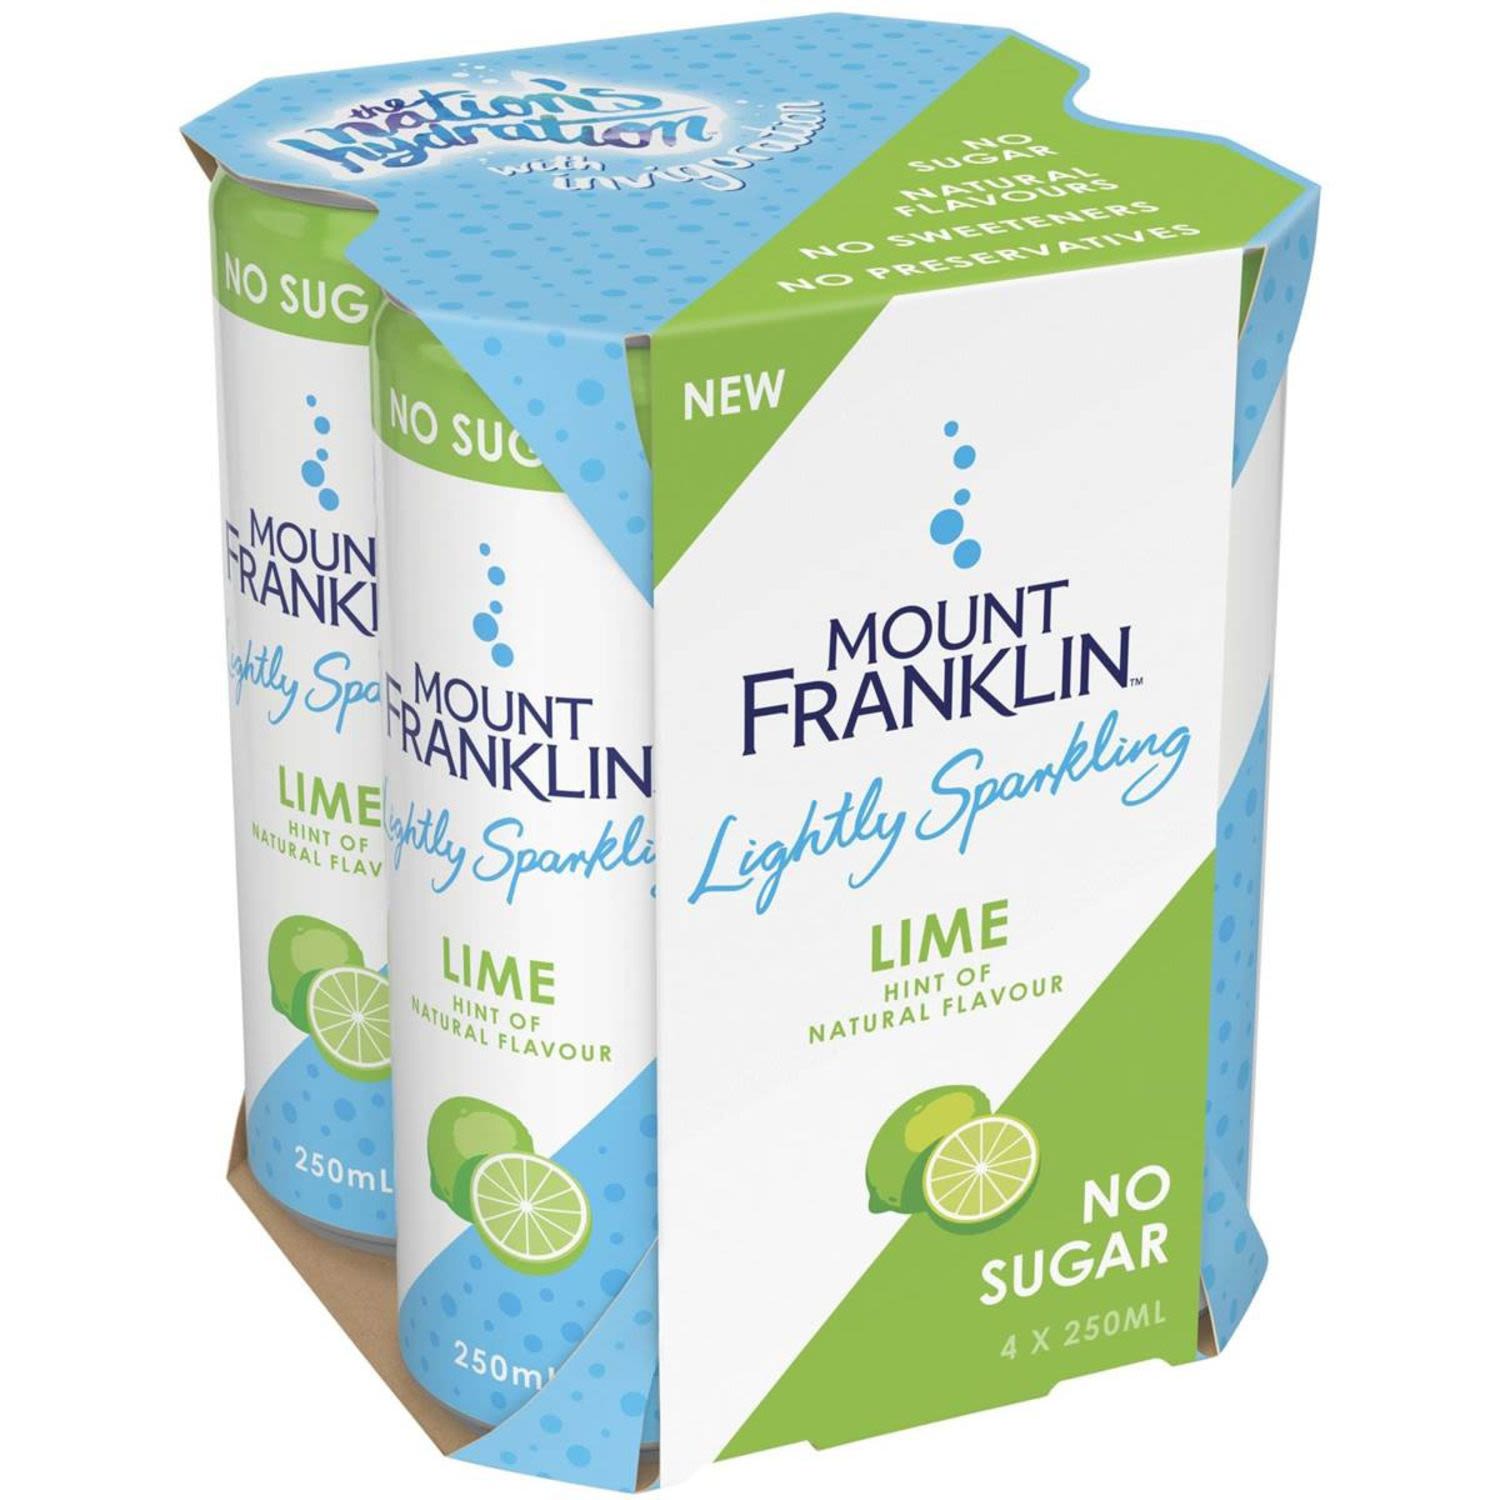 Mount Franklin Lightly Sparkling Lime, 4 Each